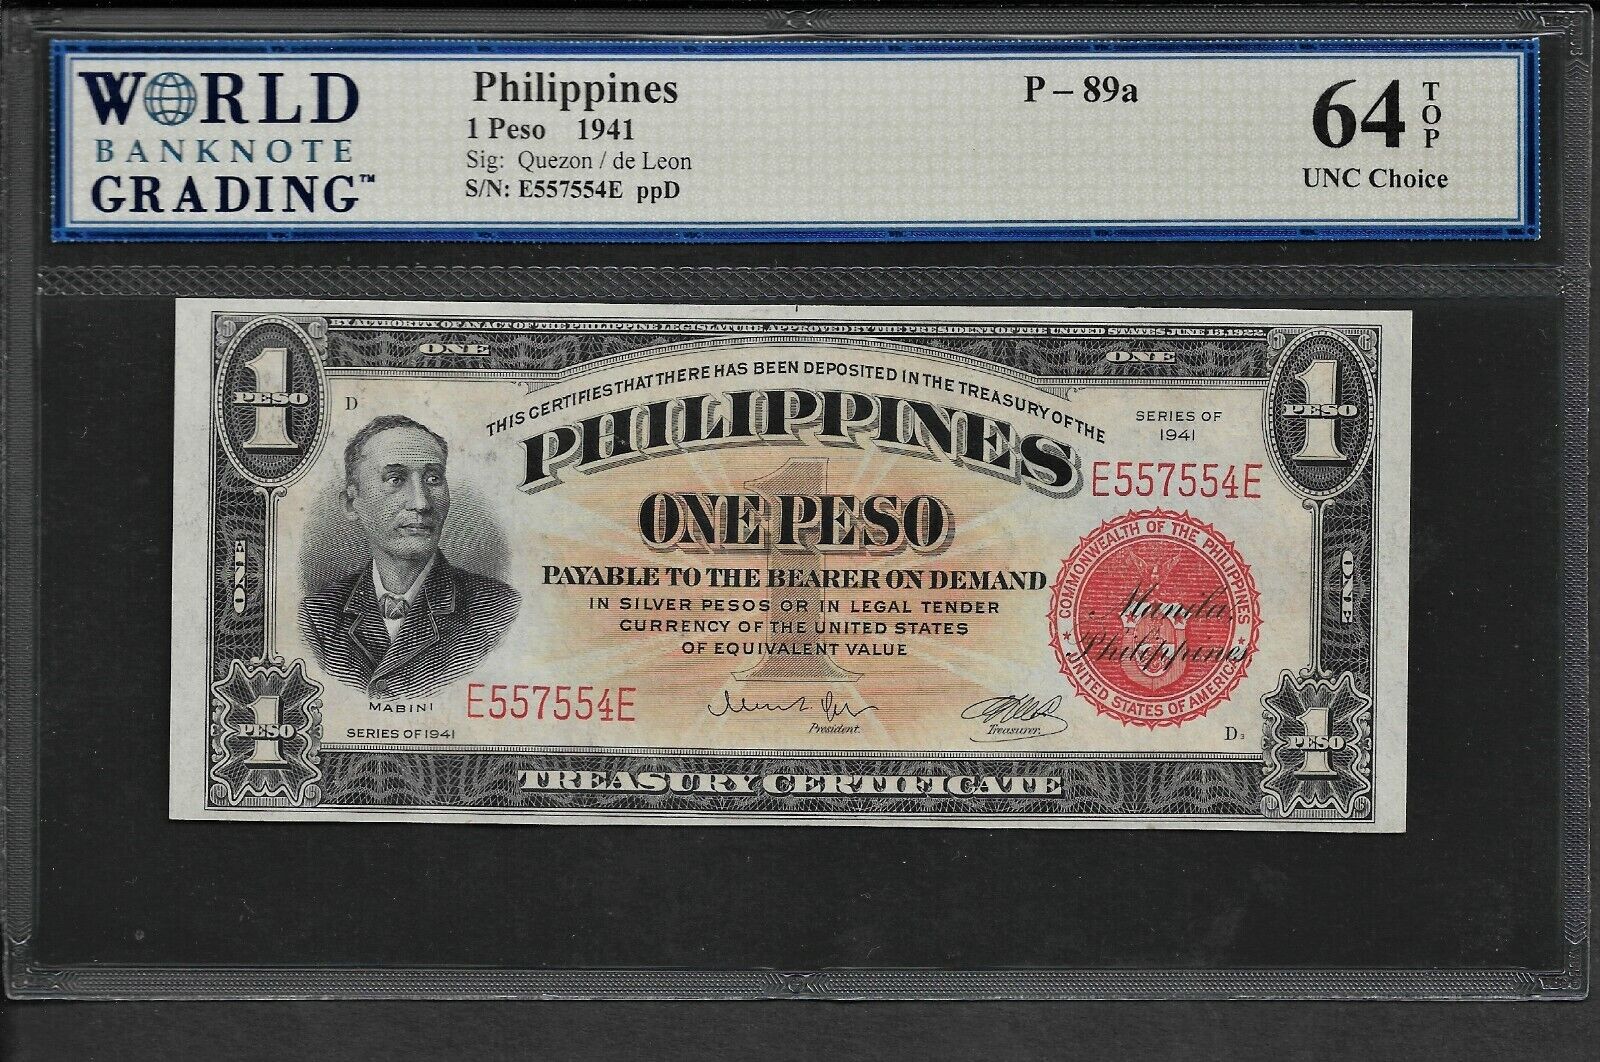 Philippines p-89a, UNC, 1 Peso, 1941